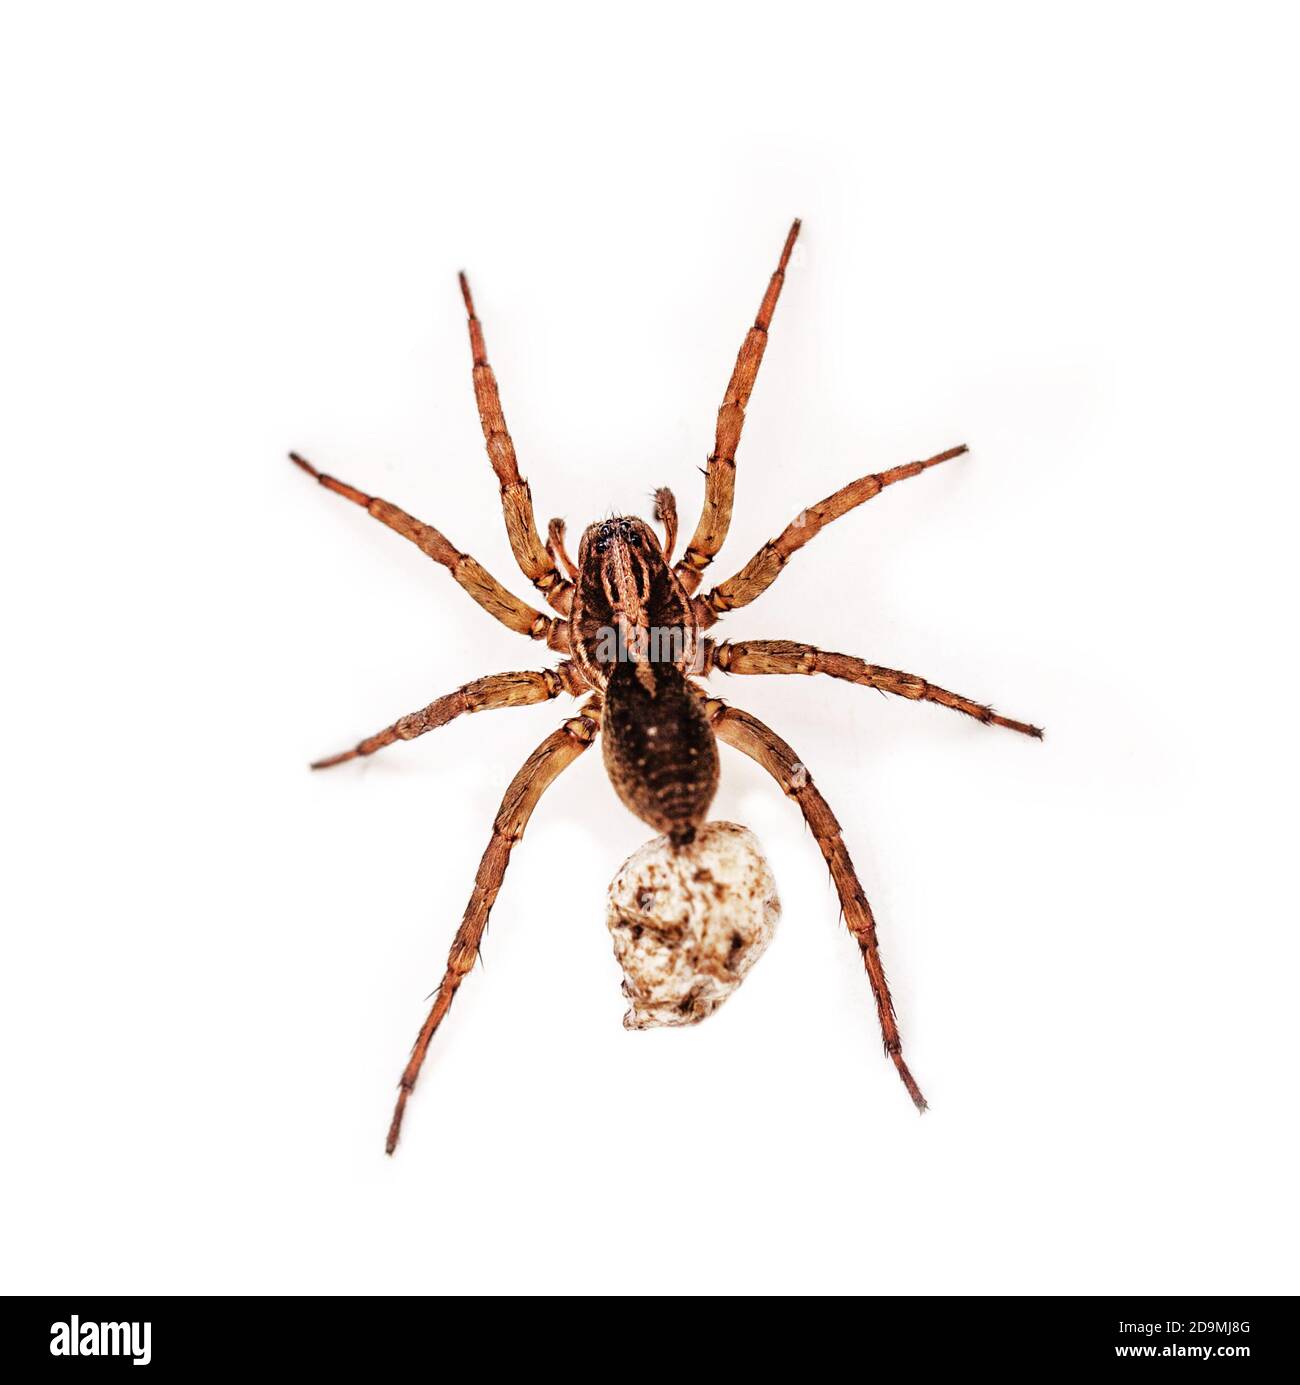 Original schwangere Spinne auf weißem isolierten Hintergrund  Stockfotografie - Alamy